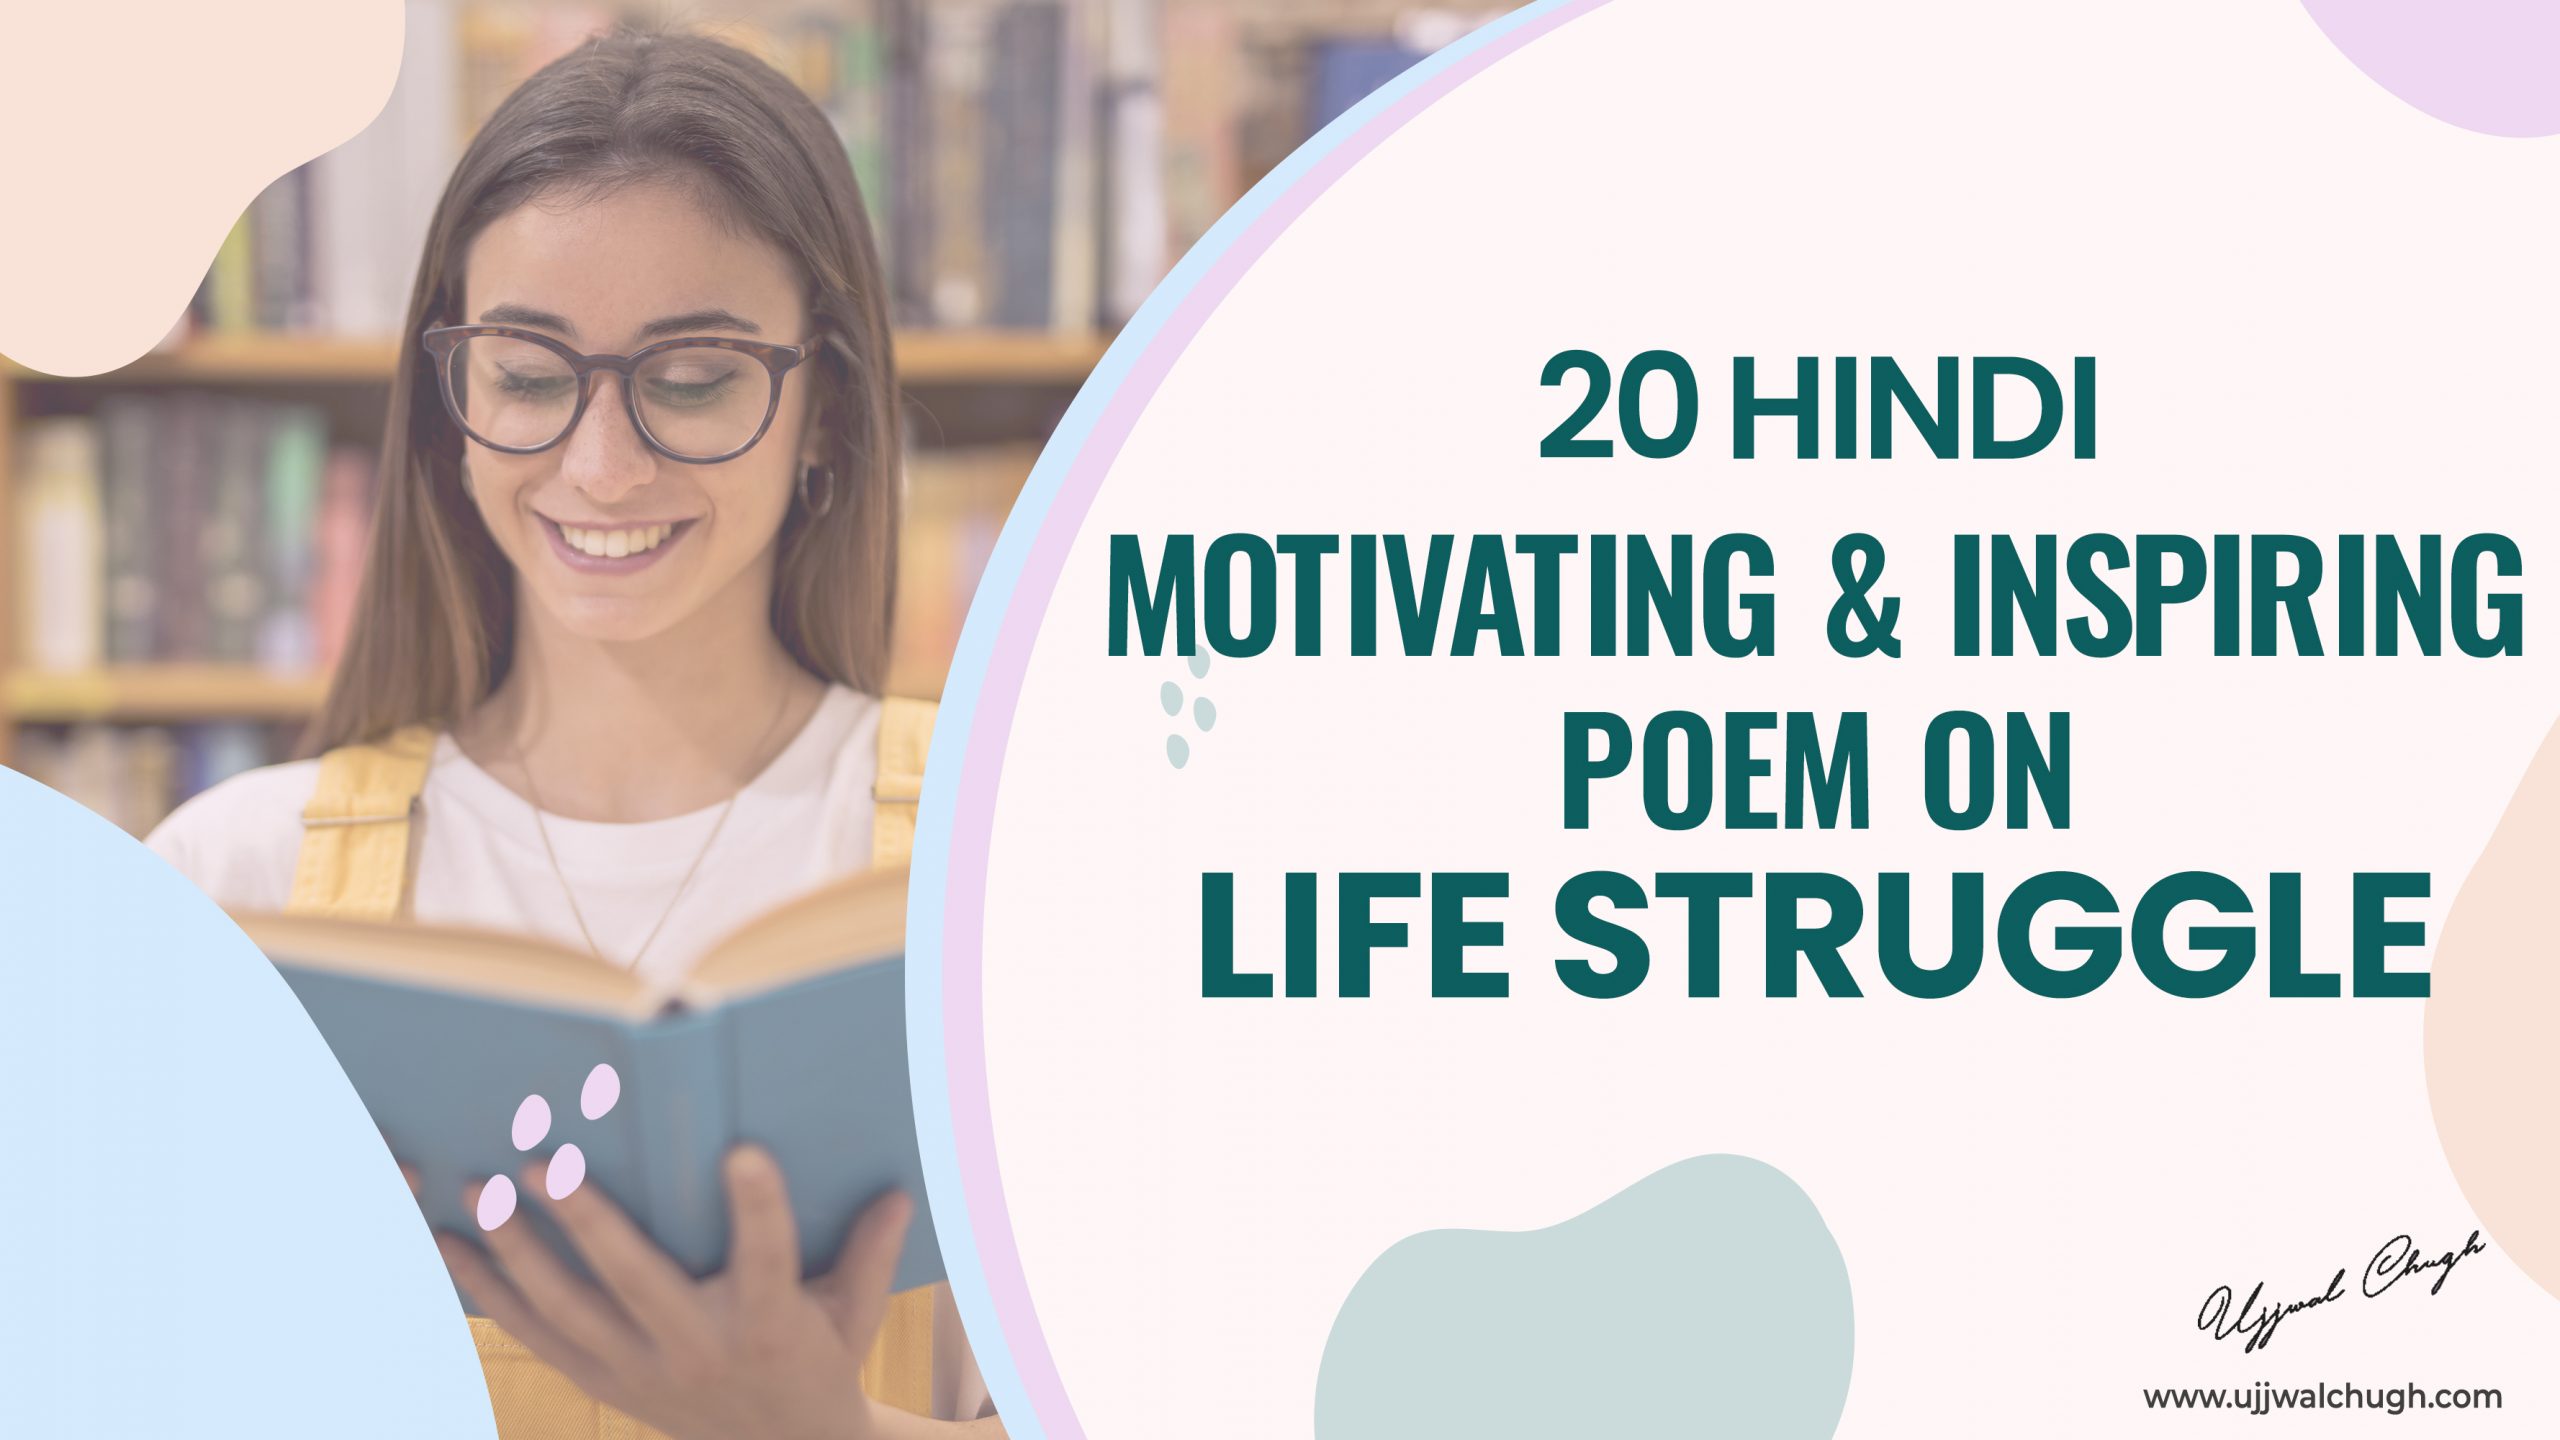 20 Hindi Motivating & Inspiring Poems on Life Struggle